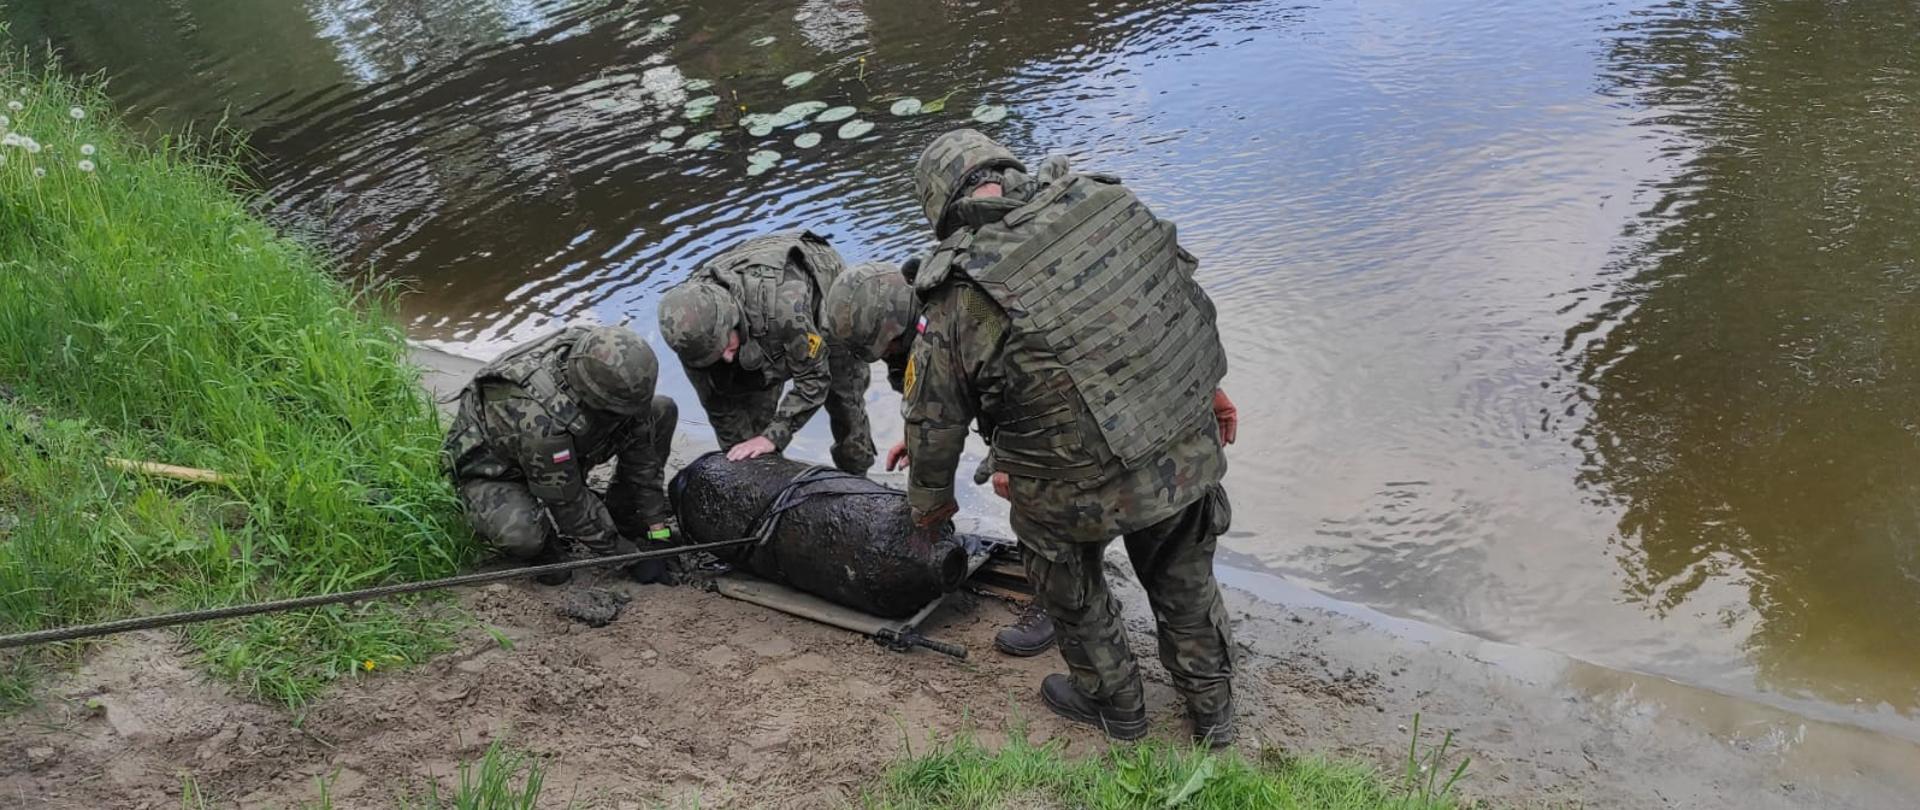 Na brzegu rzeki stoi czterech żołnierzy w zielonych mundurach. Na piasku leży przedmiot przypominający bombę.